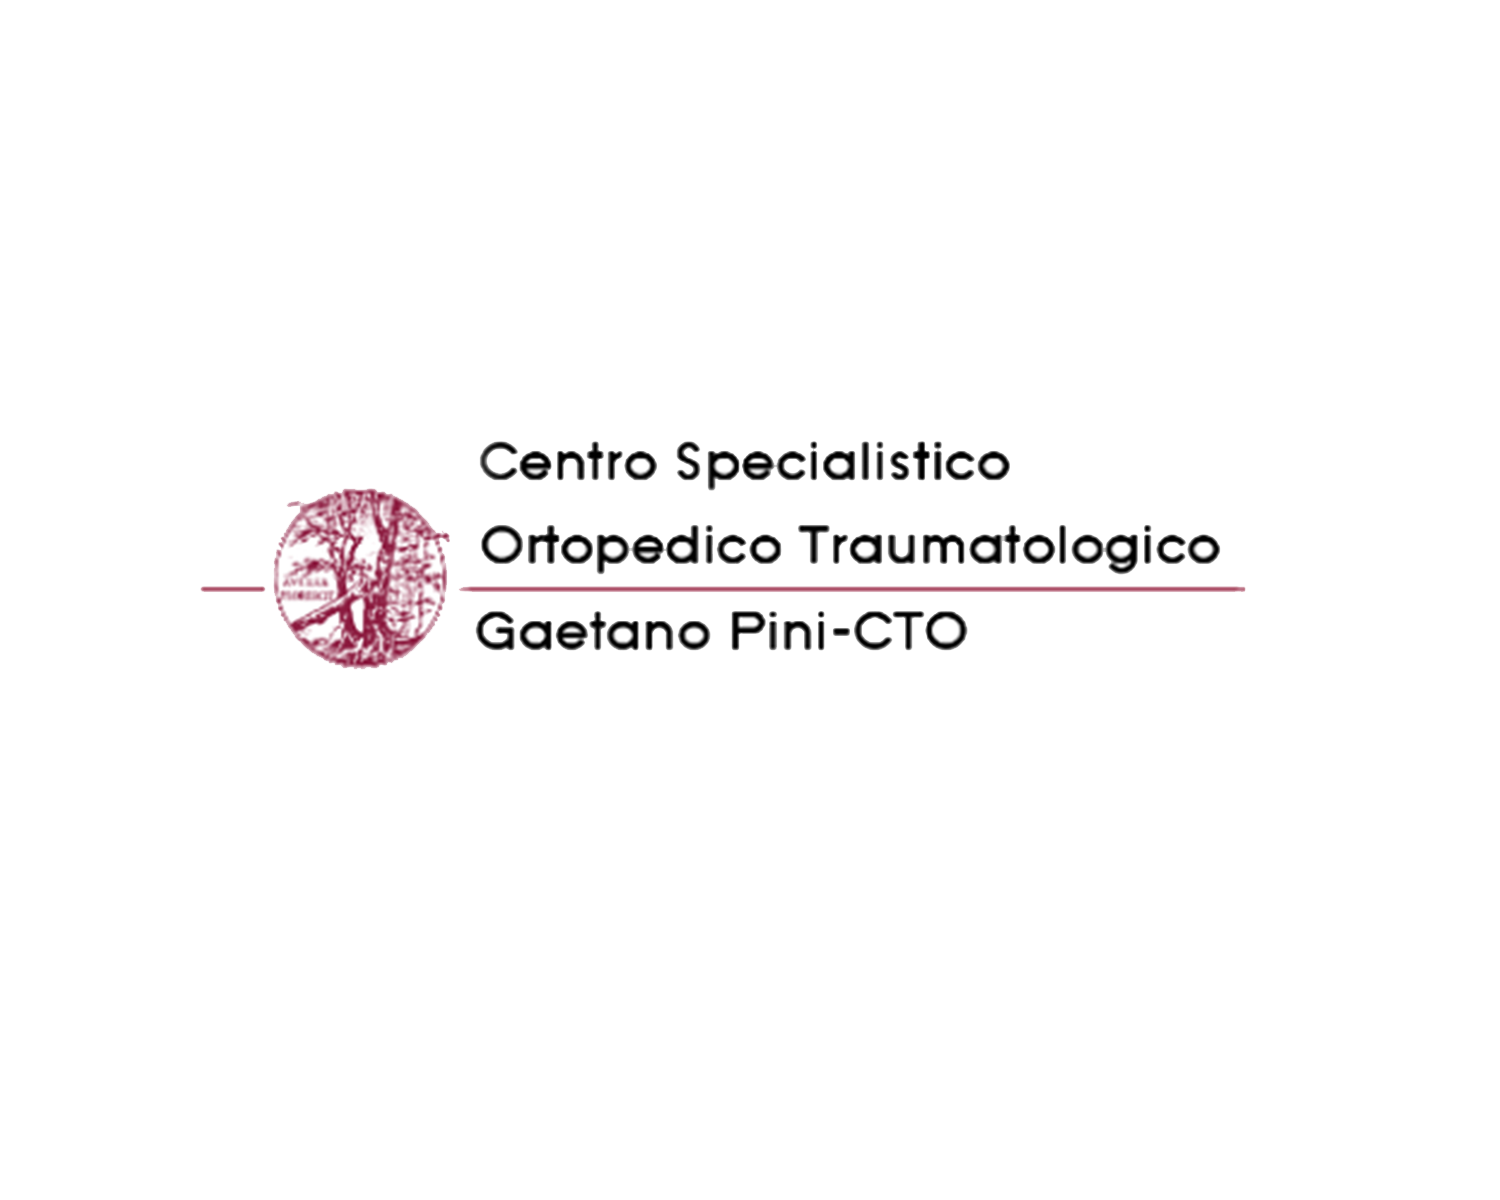 Centro Specialistico Ortopedico Traumato
logico